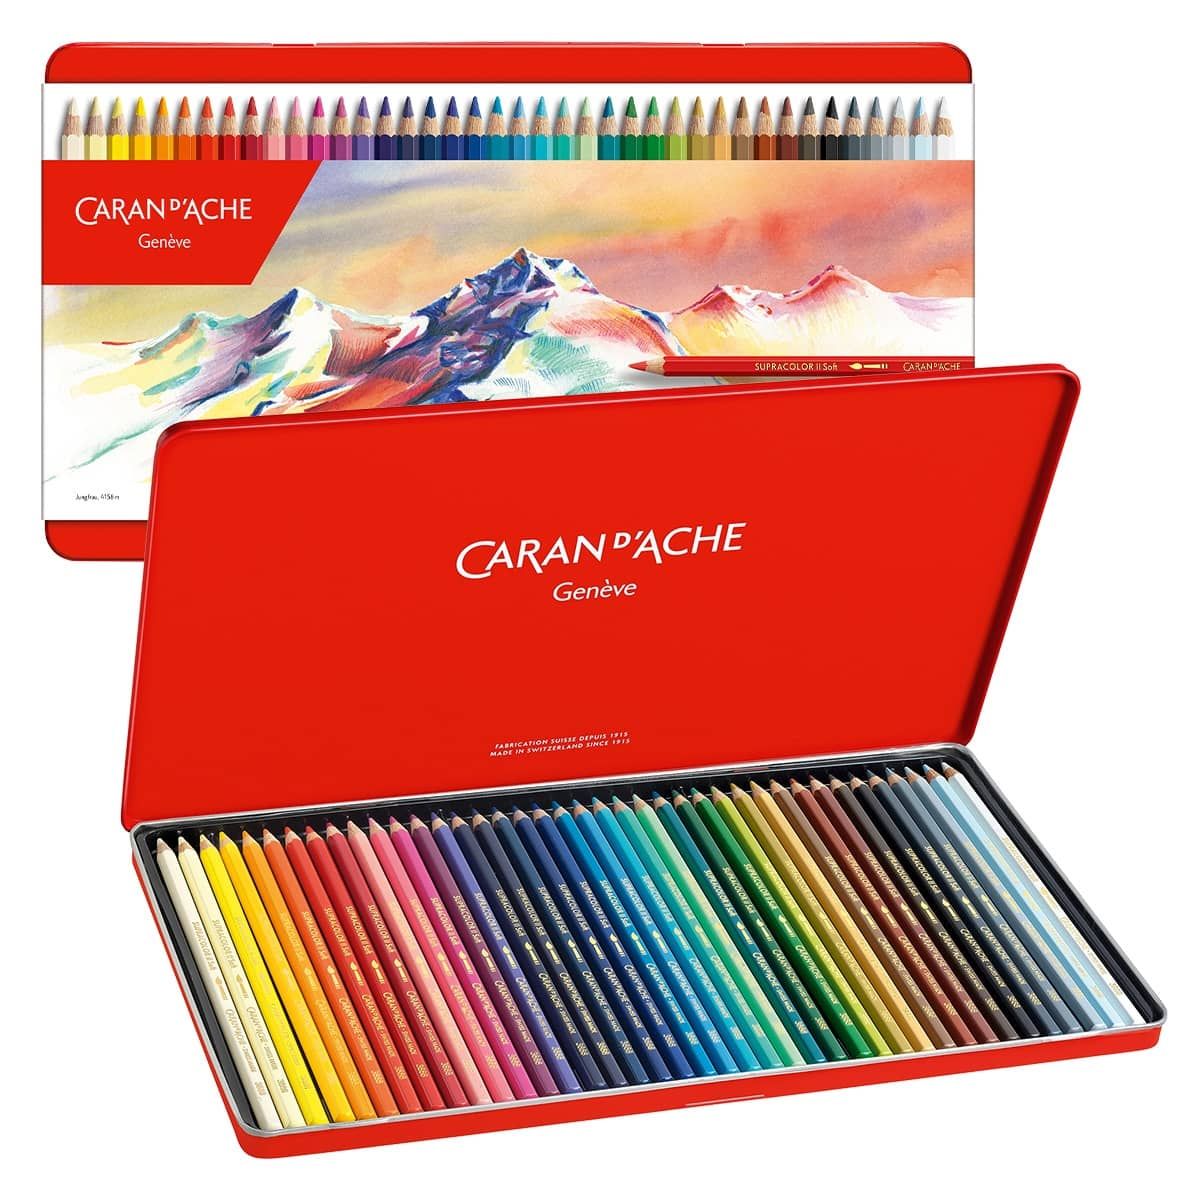 Tin Box Set of 40 Supracolor Soft Aquarelle Watercolor Pencils 